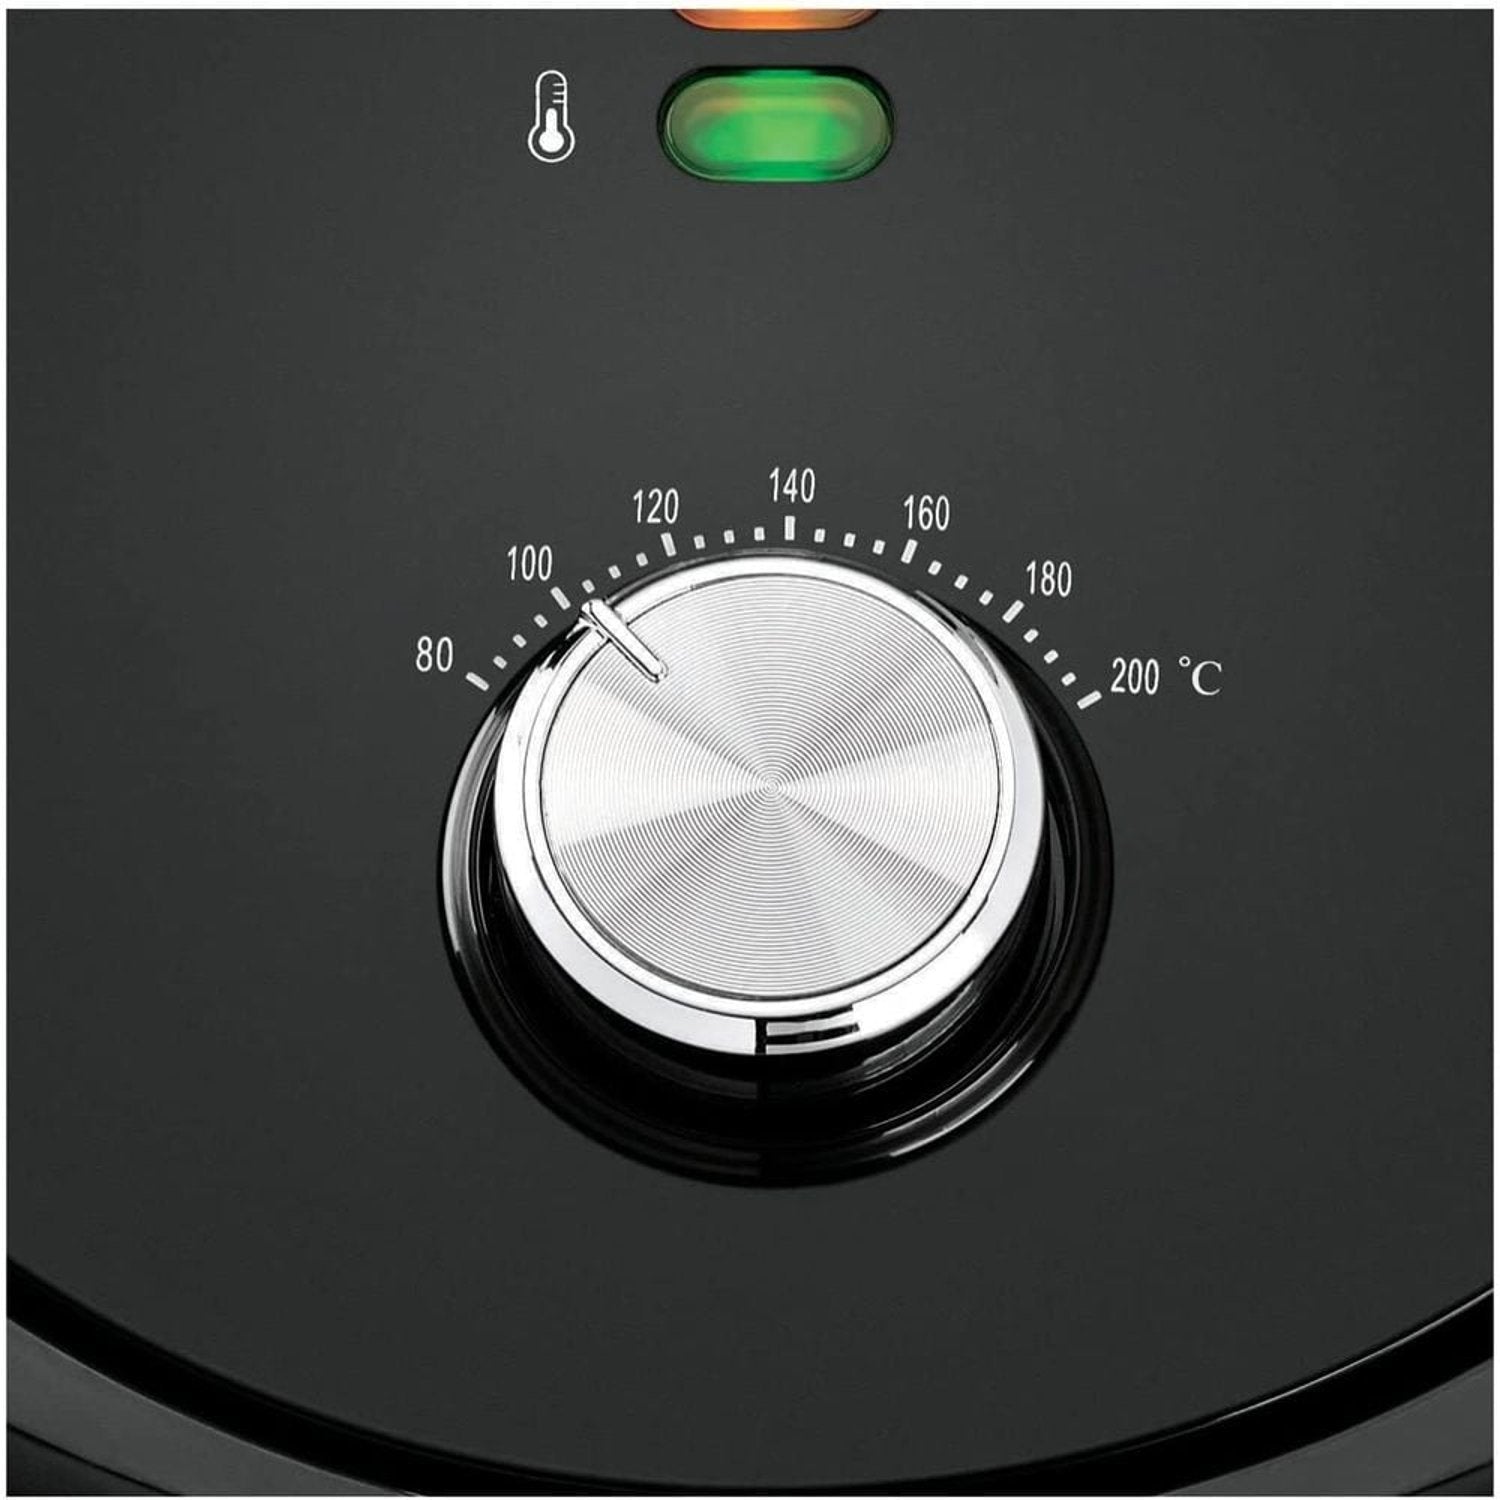 Black & Decker Air Fryer Black 1800W | Kitchen Appliances | Halabh.com